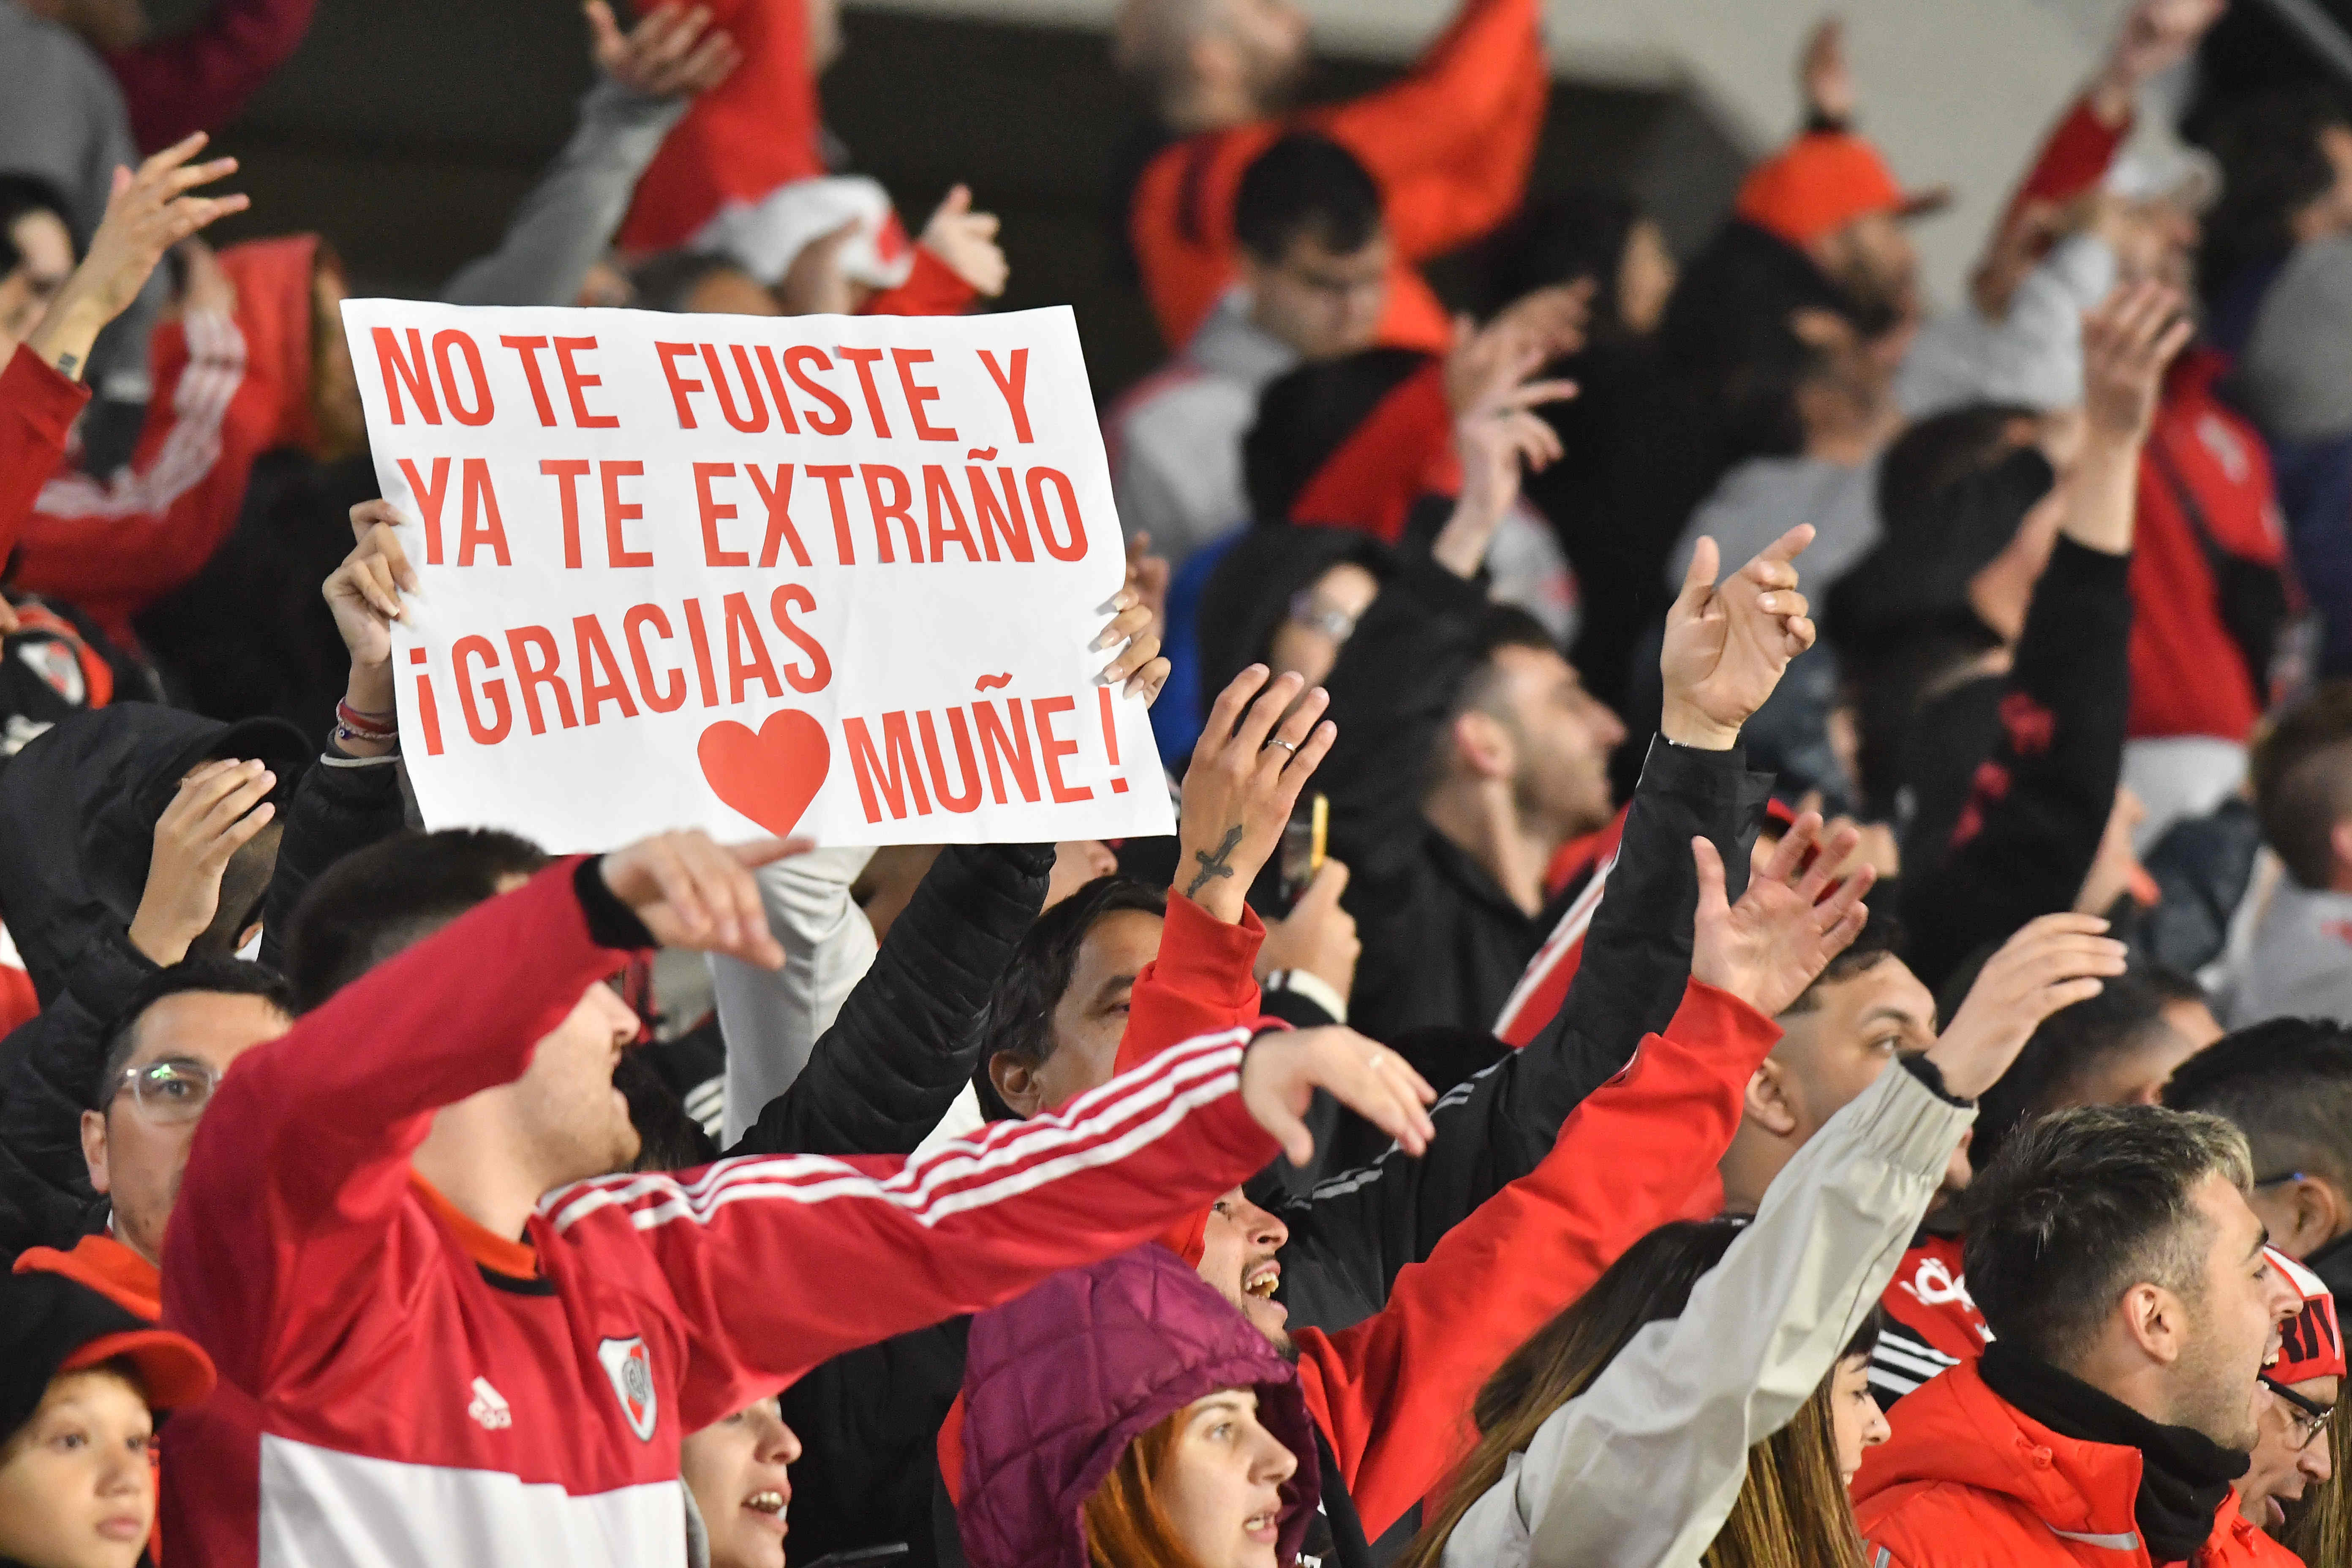 "No te fuiste y ya te extraño, gracias Muñe": un mensaje que resume el espíritu que embargó a todos los espectadores